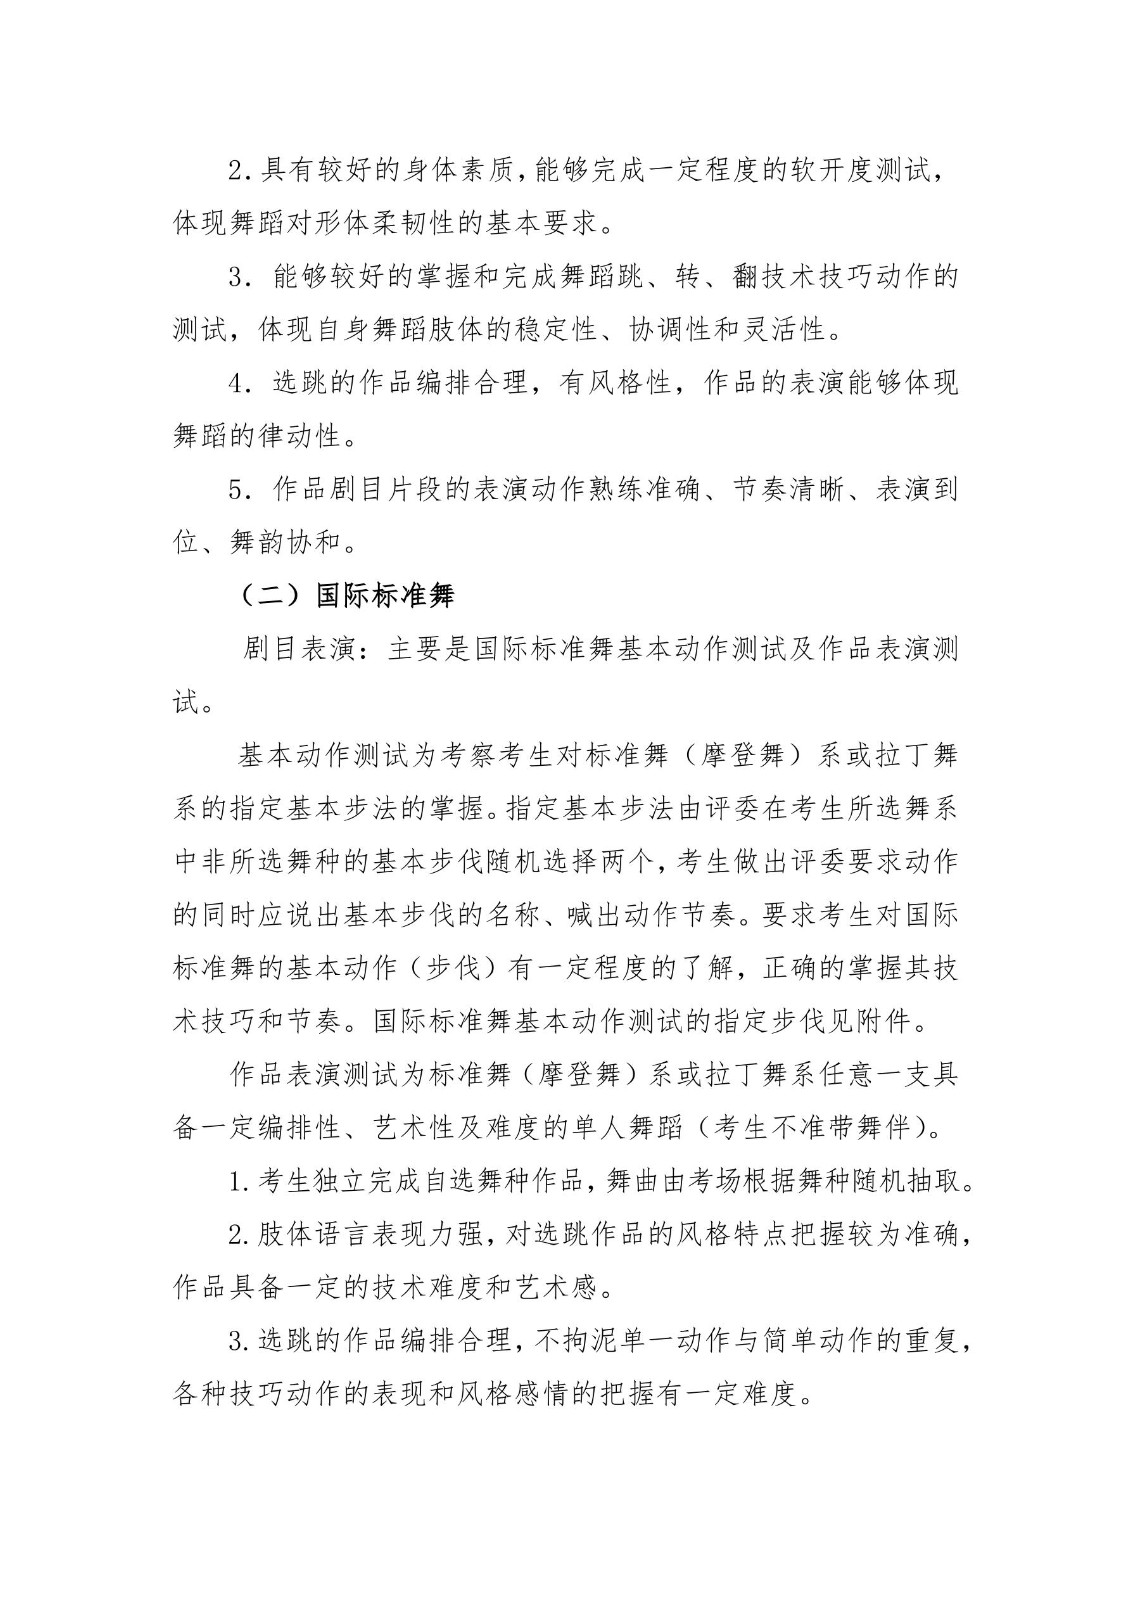 2020年河南省普通高校招生舞蹈类专业省统考考试说明